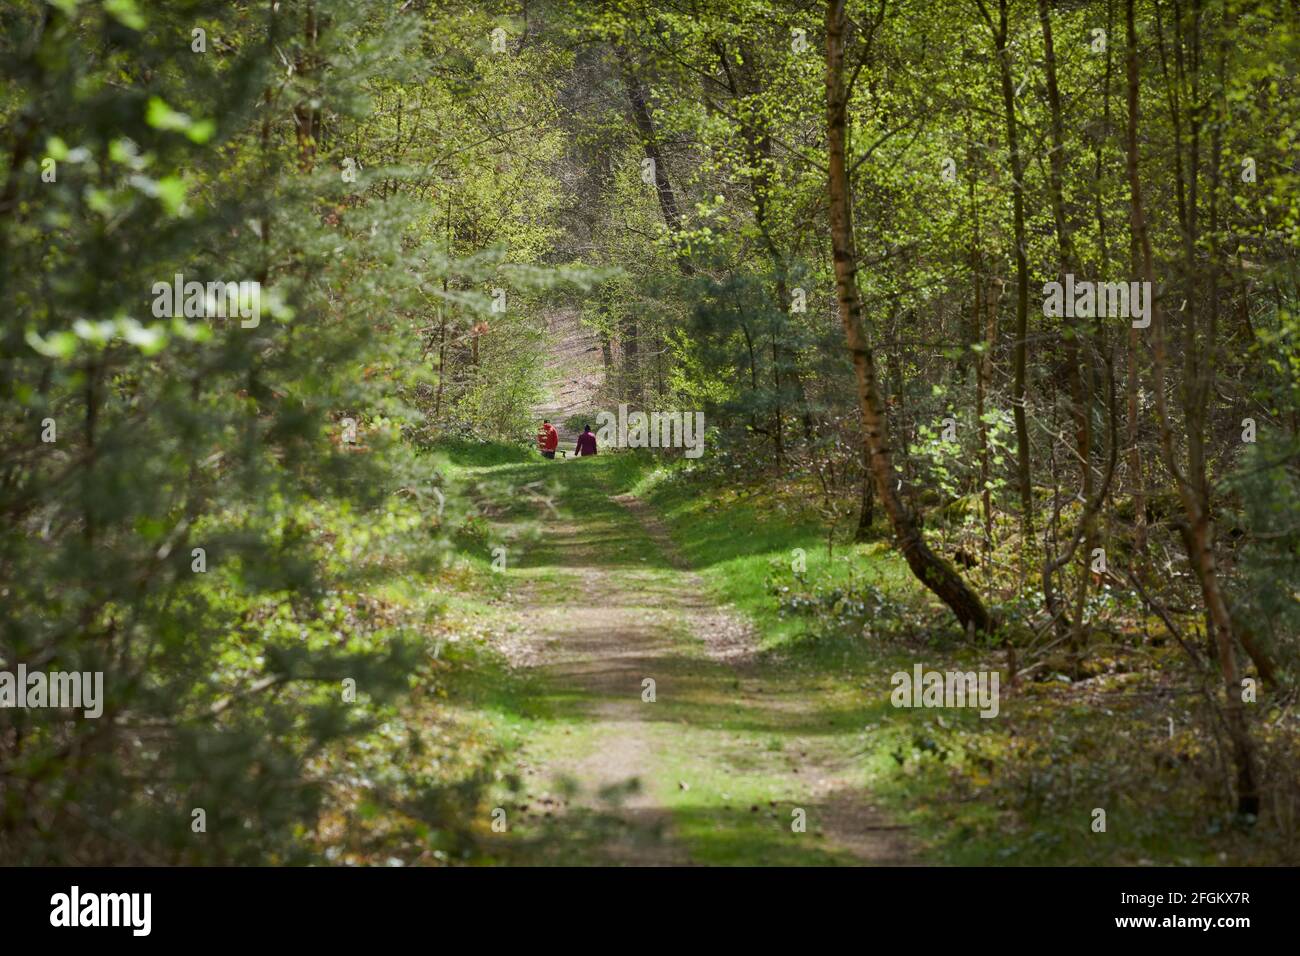 Naturaufnahmen im Waldgebiet 'die Haard' gehoerend zu Gebiet Hohe Mark. Die Bilder wurden im Fruehling gemacht. Stock Photo